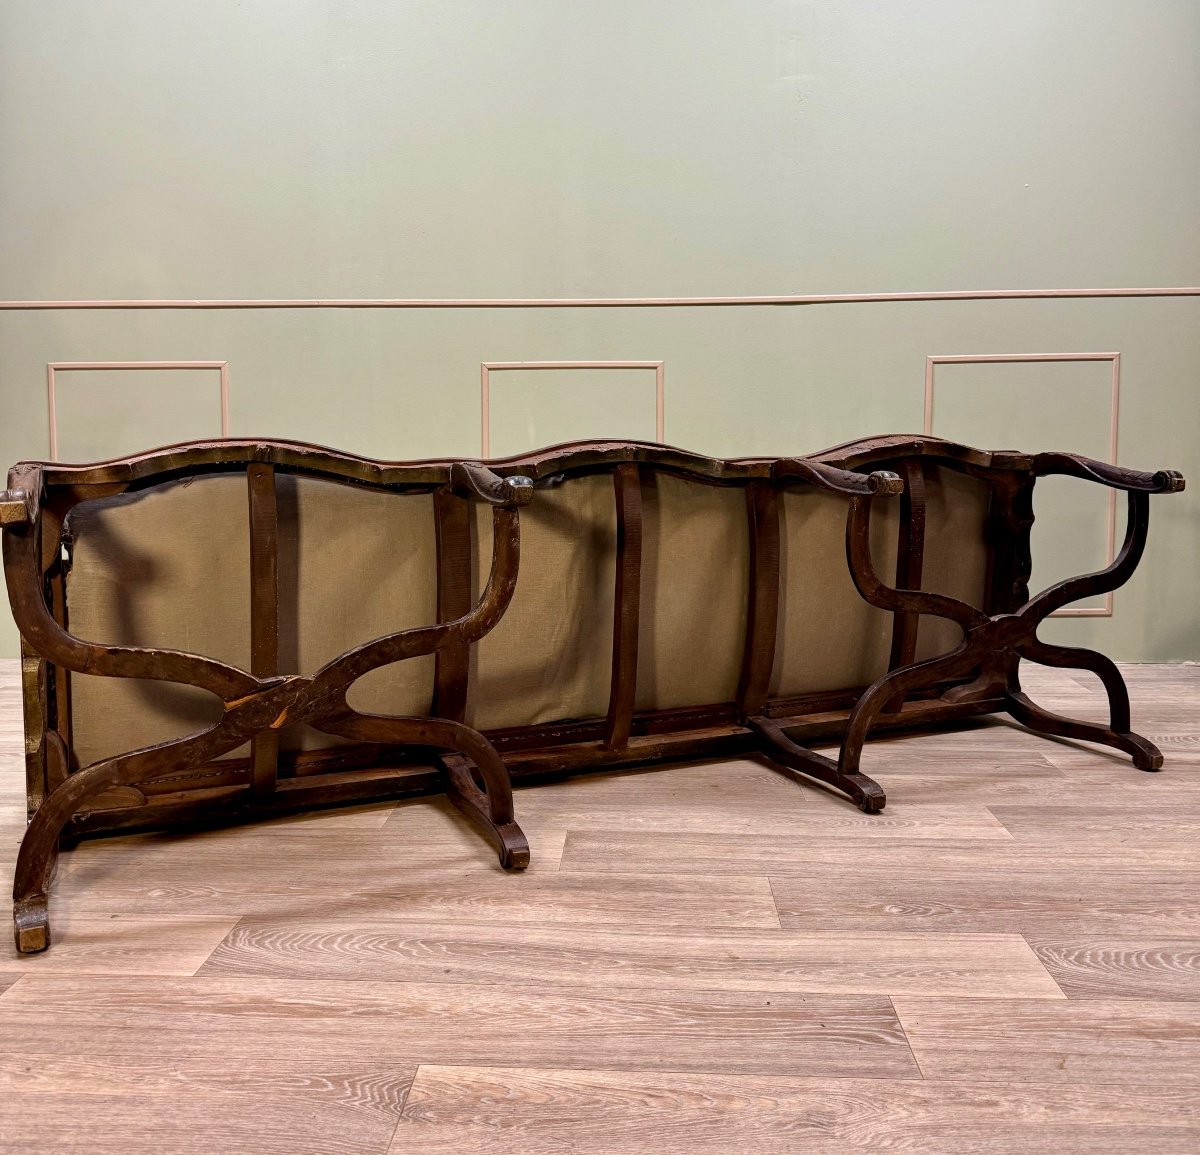 Bench Sofa In Cane Walnut From Regency Period XVIII Eme Century -photo-8